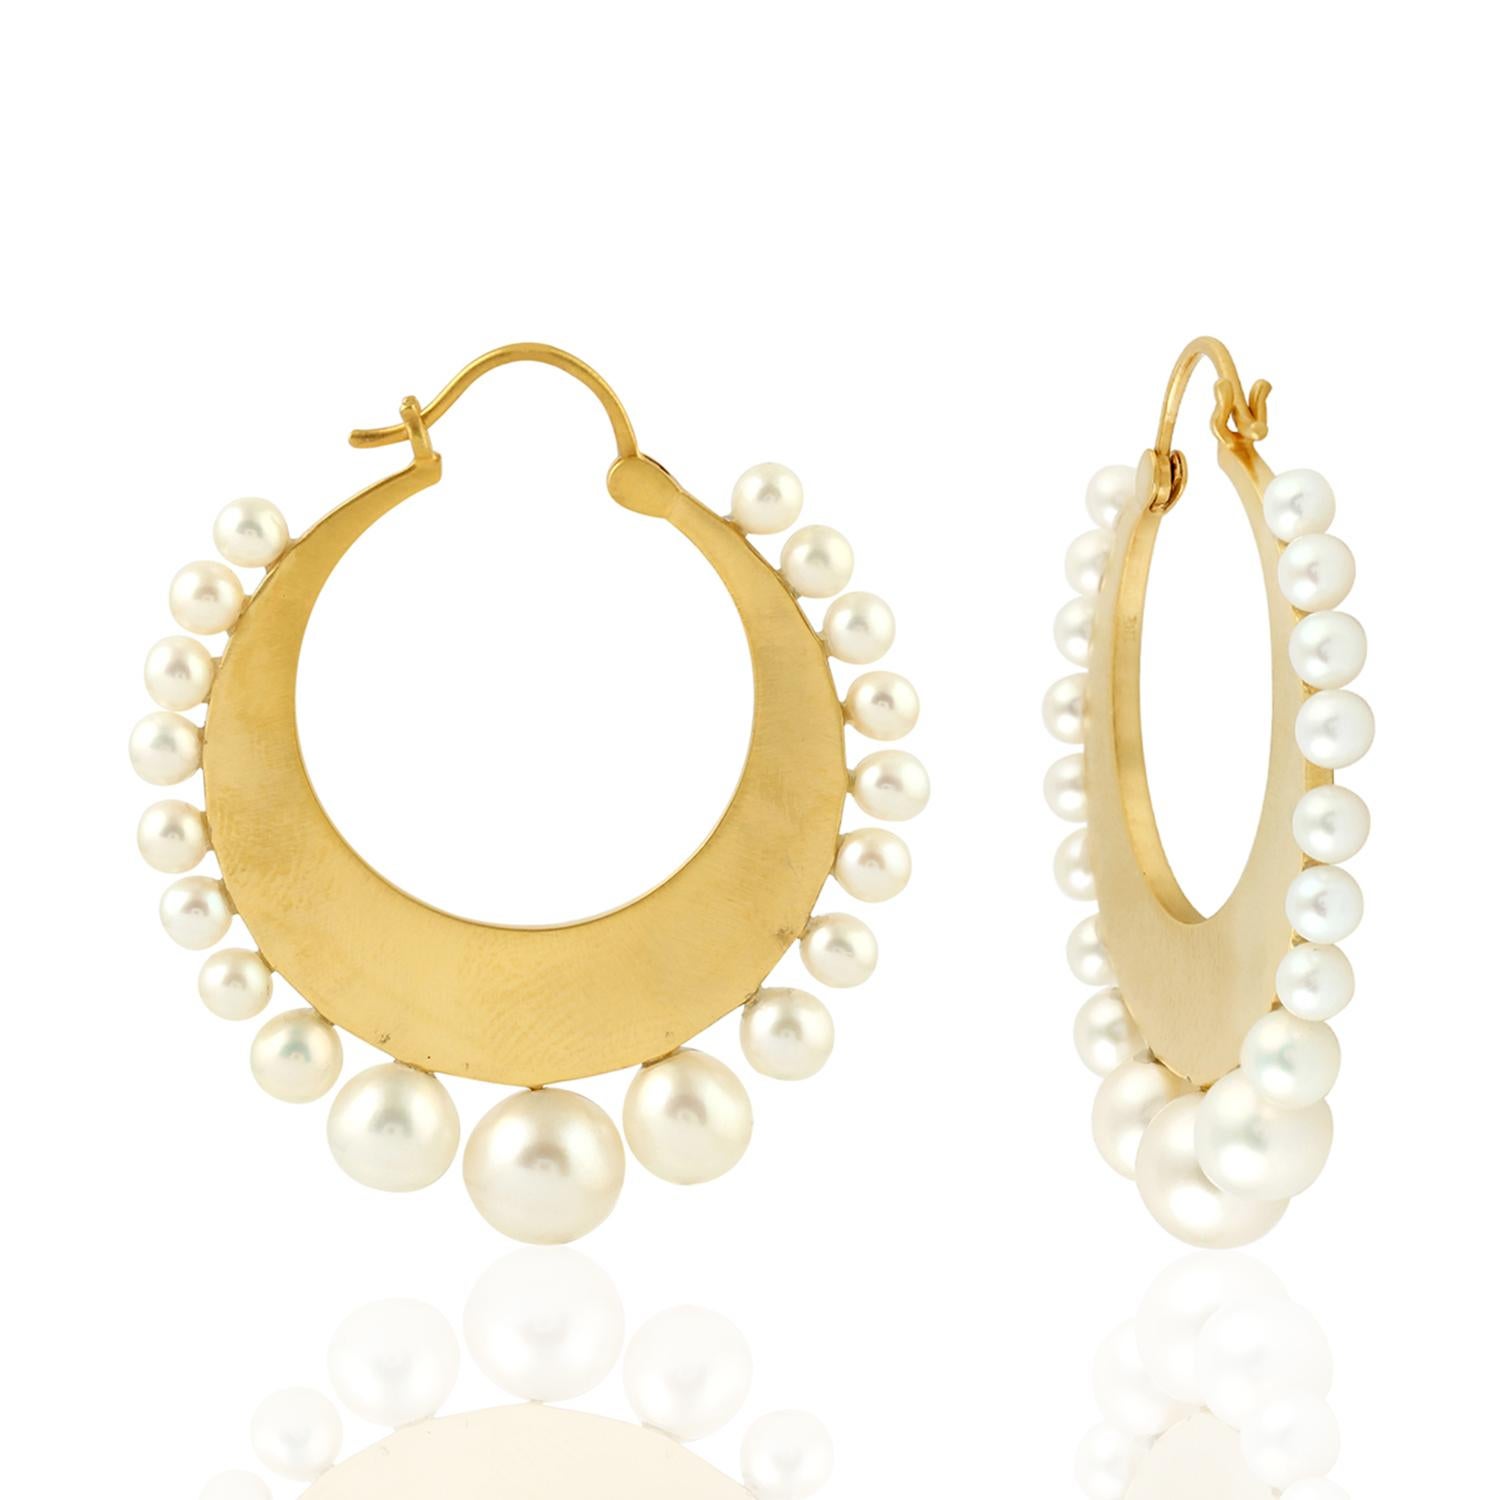 Fabriquées à la main en or 18 carats, ces magnifiques boucles d'oreilles sont serties de 32,02 carats de perles.

SUIVRE  La vitrine de MEGHNA JEWELS pour découvrir la dernière collection et les pièces exclusives.  Meghna Jewels se classe parmi les